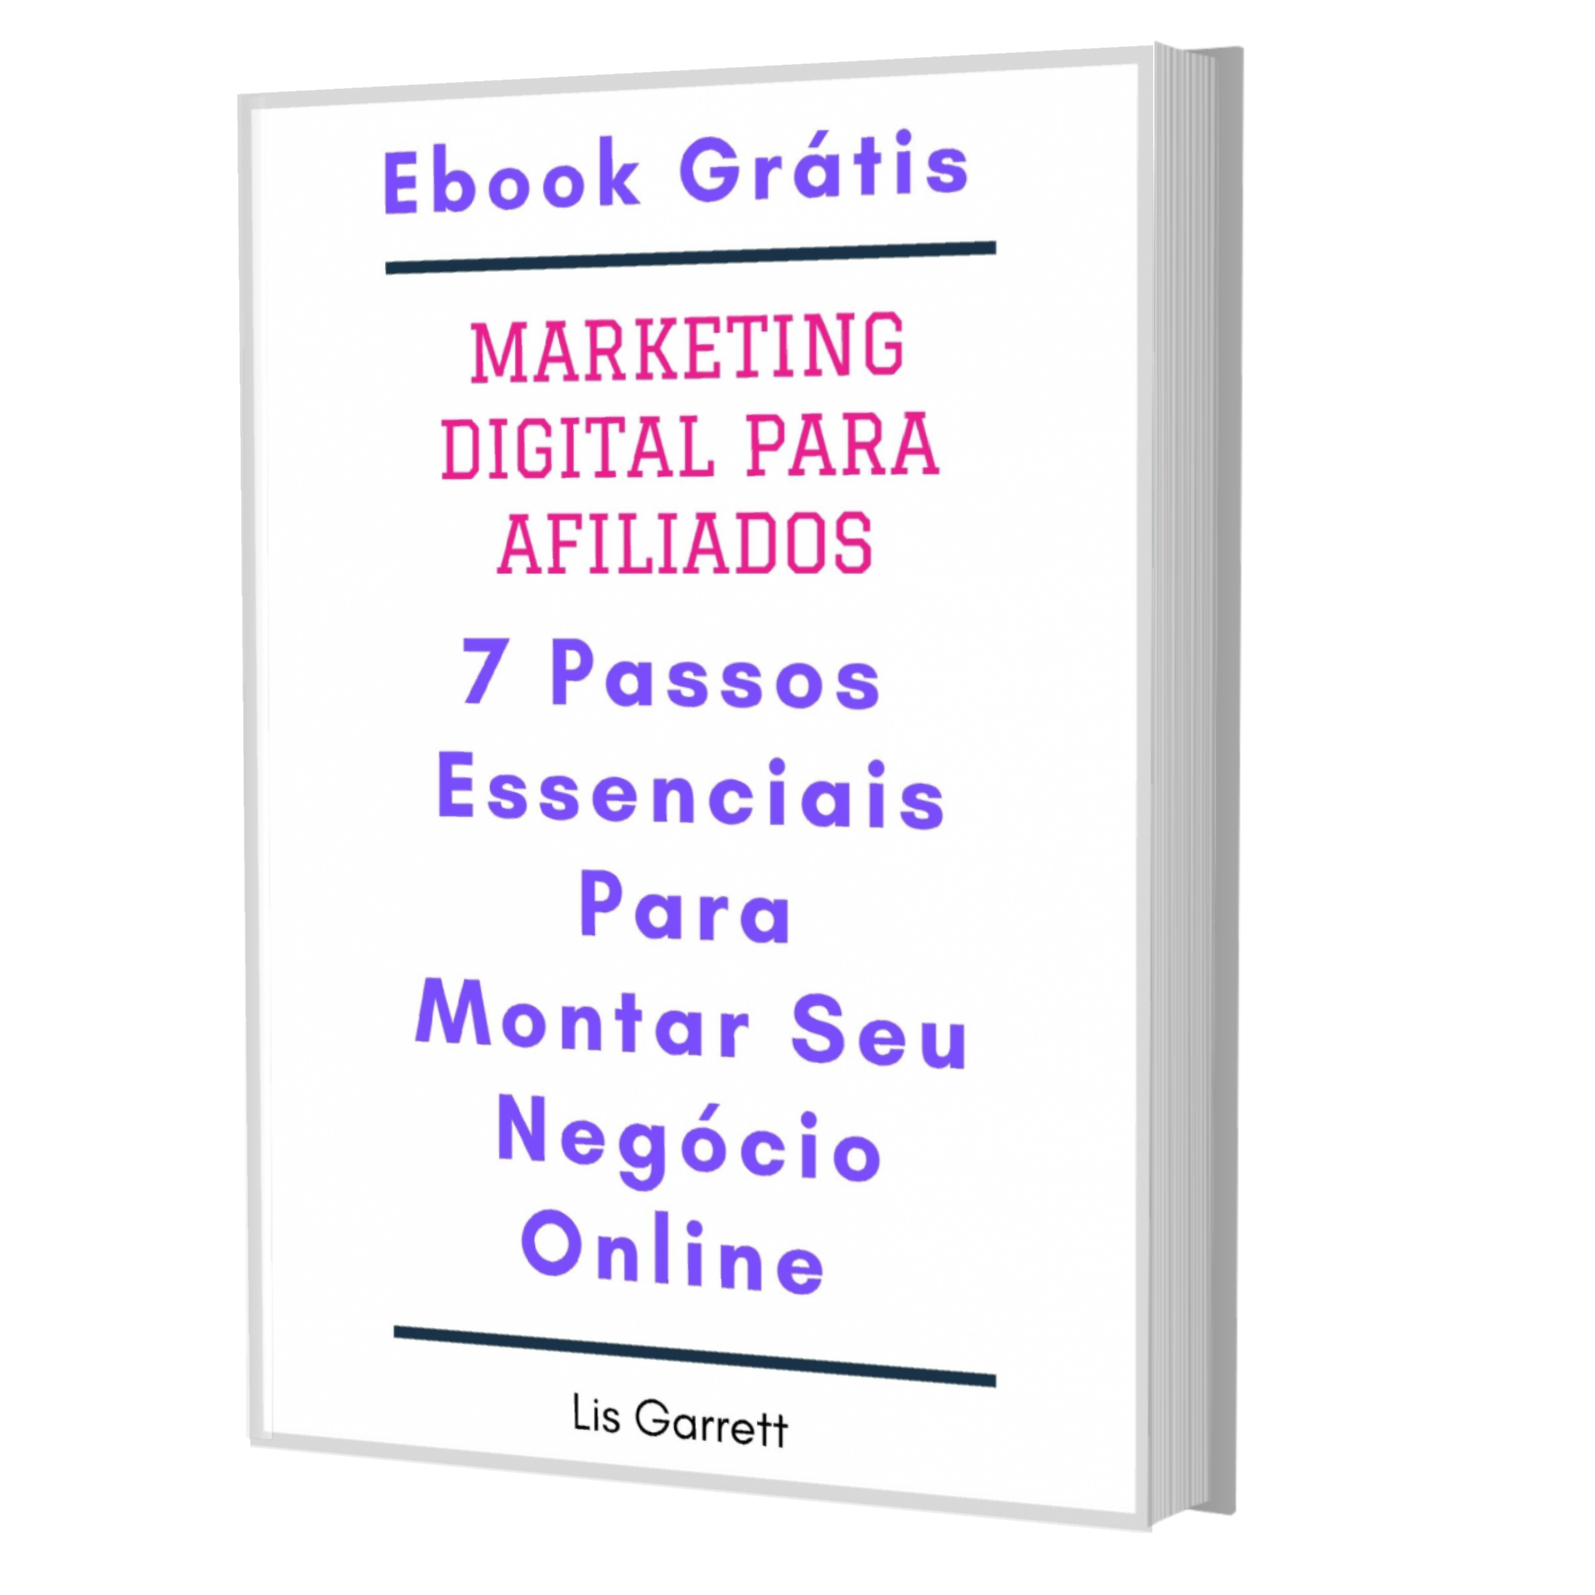 Receba Agora meu Ebook Grátis Sobre Marketing Digital para Afiliados e Comece Já a Montar o Seu Negócio Online!